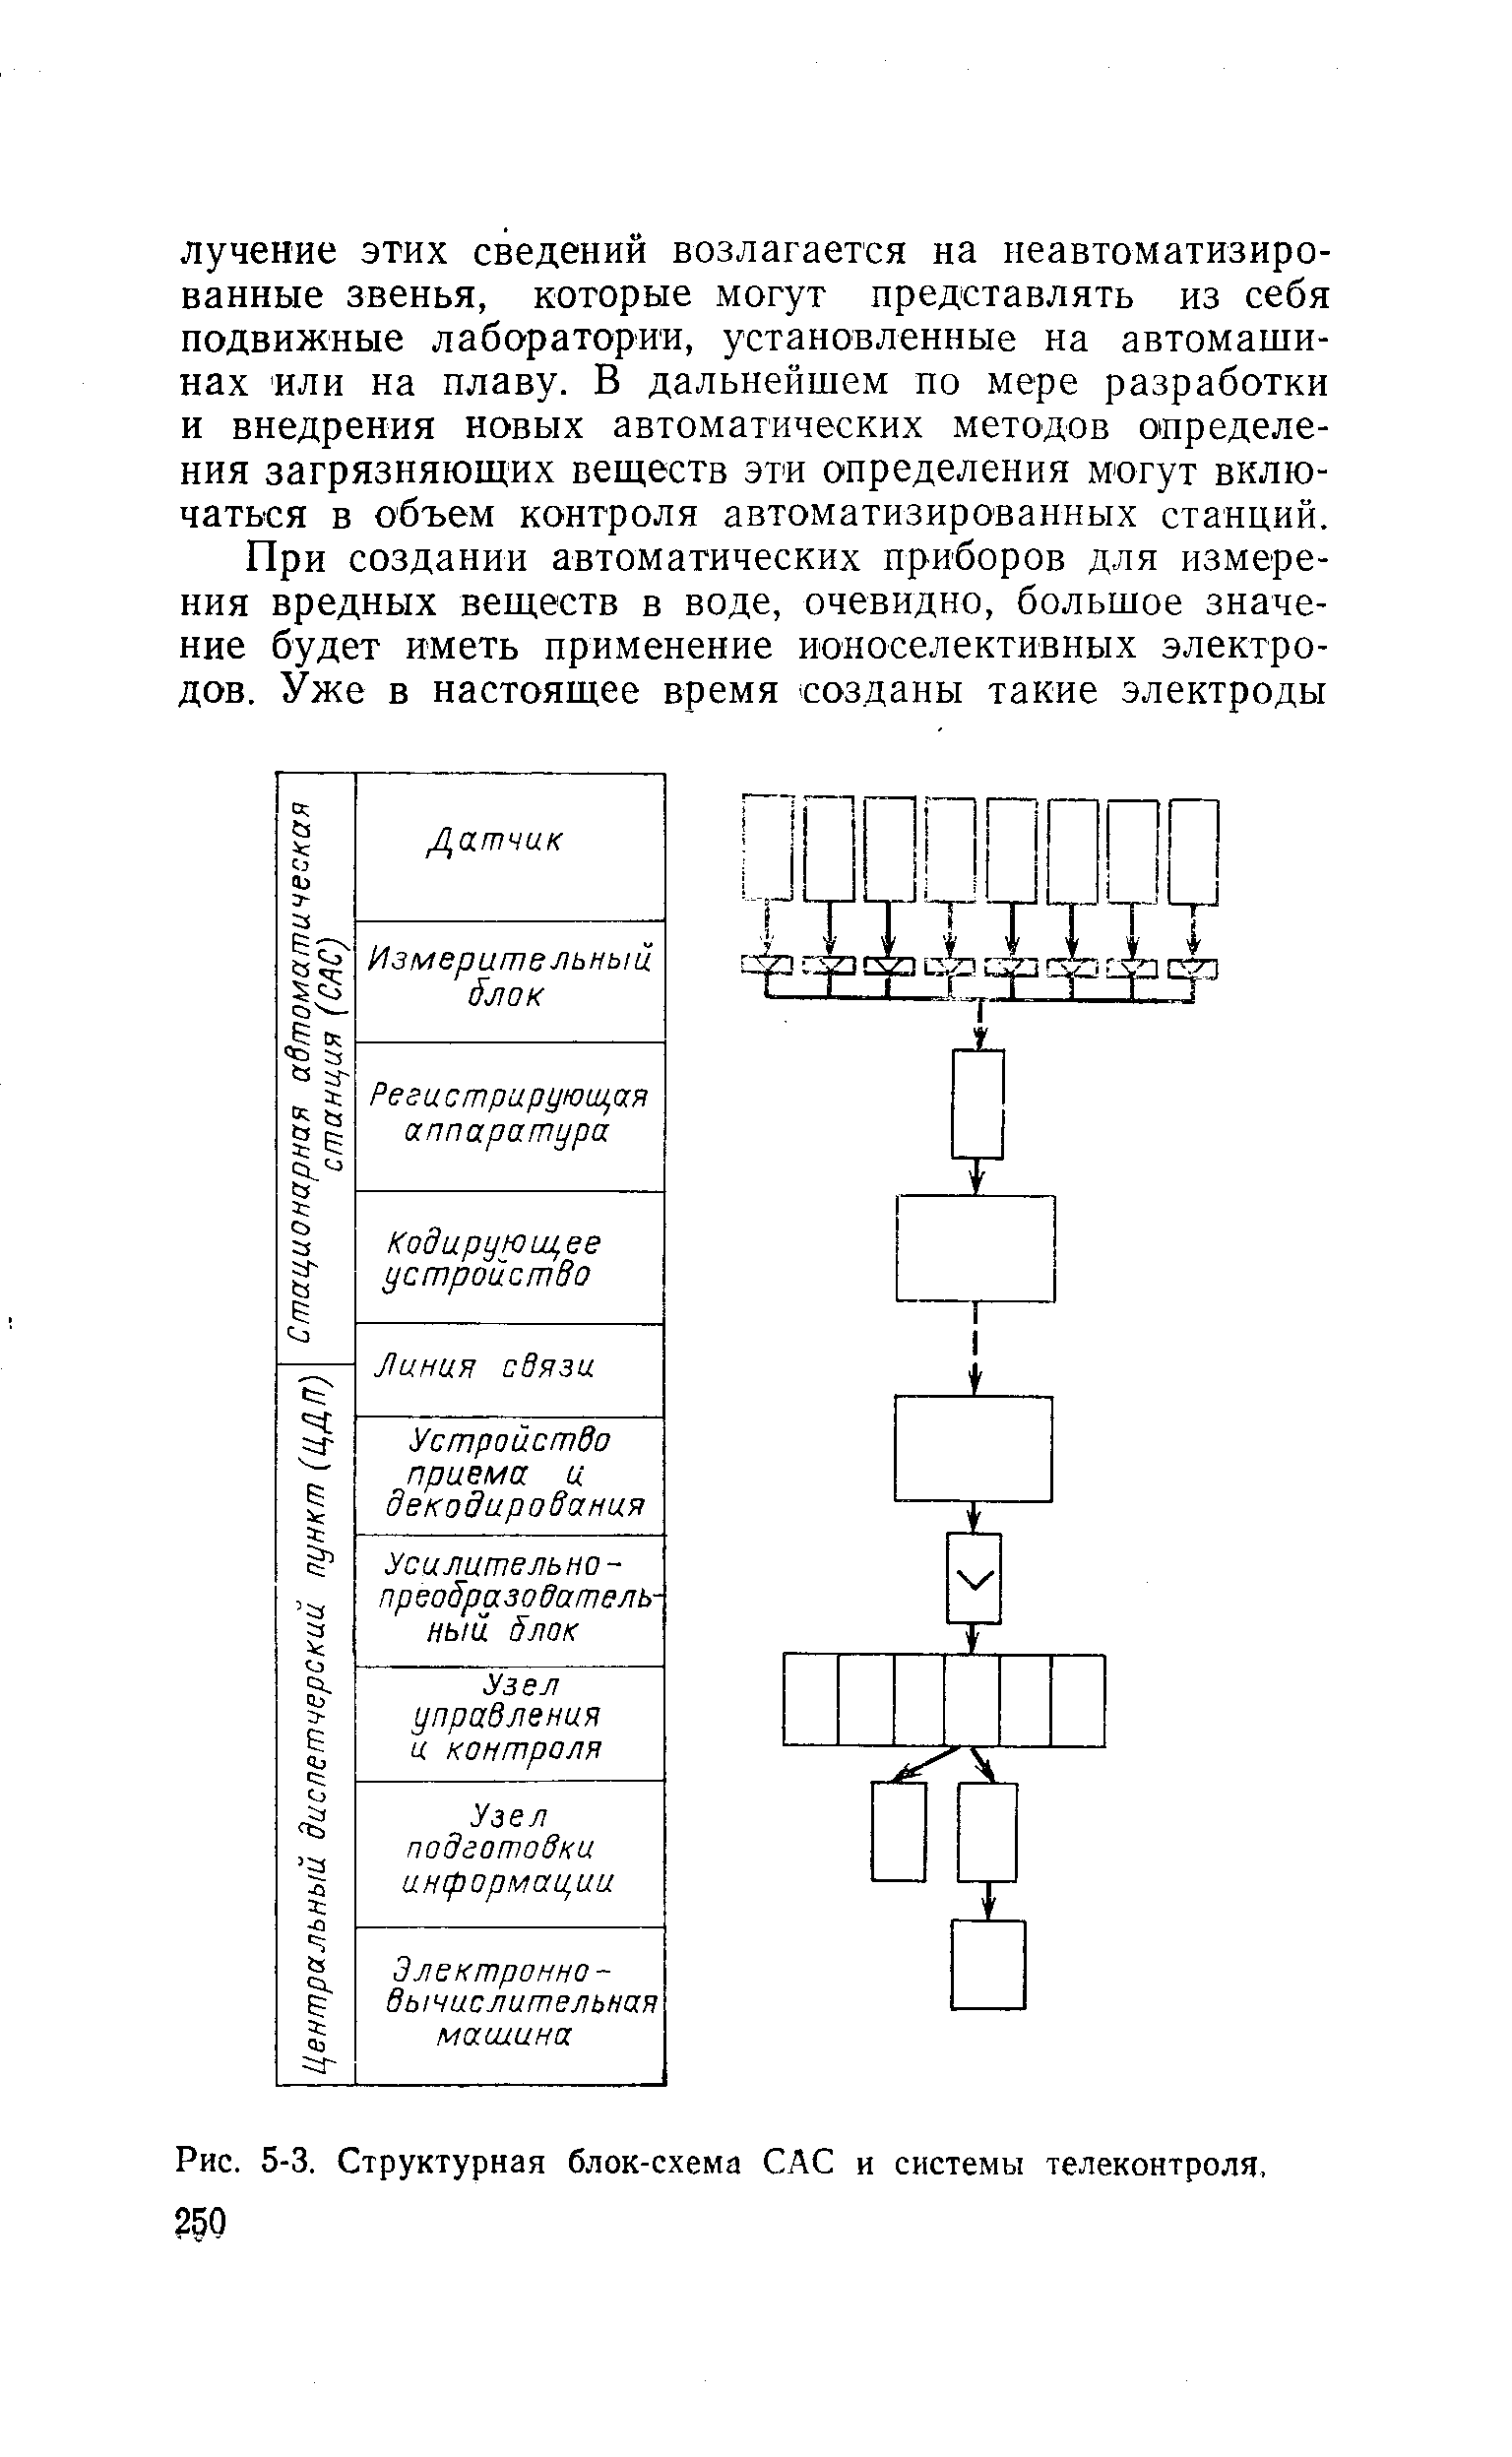 Представленная на рисунке система блоков